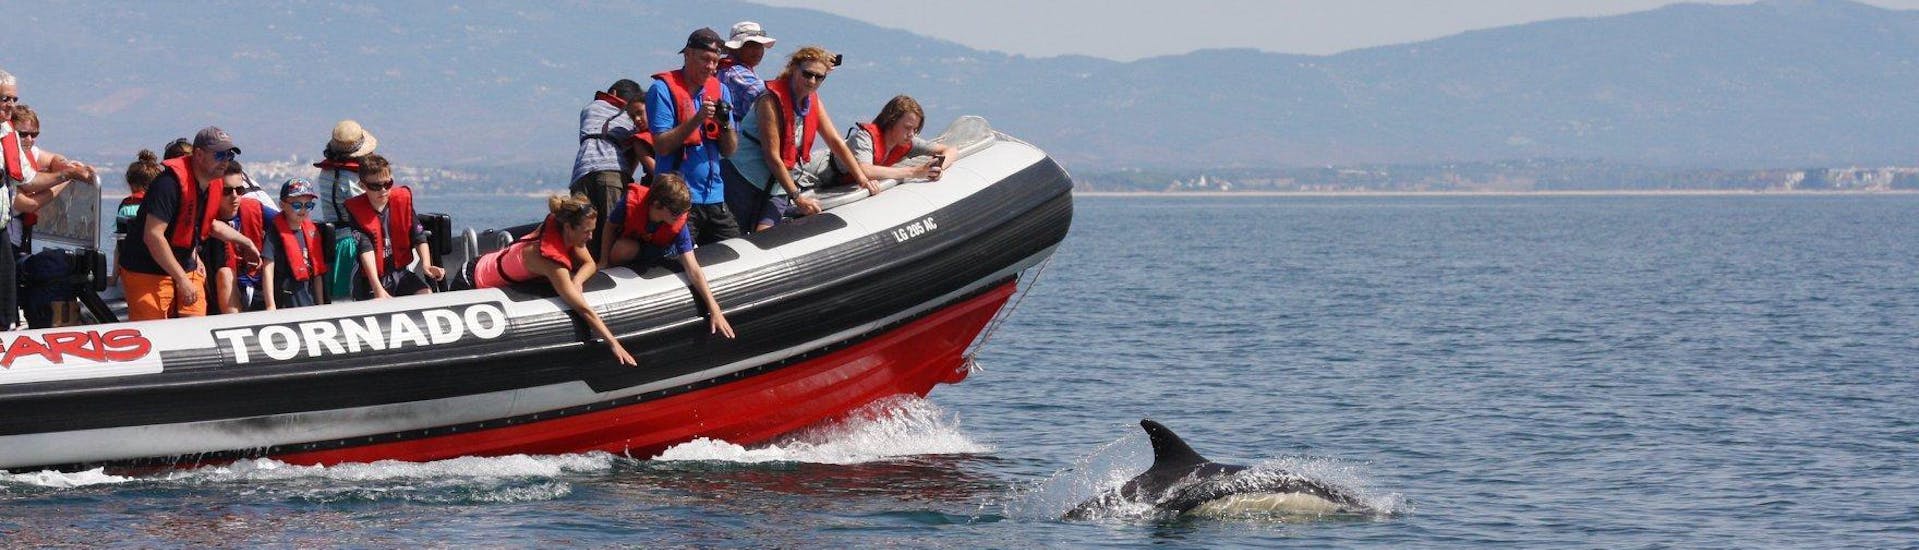 Lors d'une balade d'observation des dauphins en bateau à Portimao avec Seafaris Algarve, les passagers admirent ces sympathiques animaux depuis le bateau.